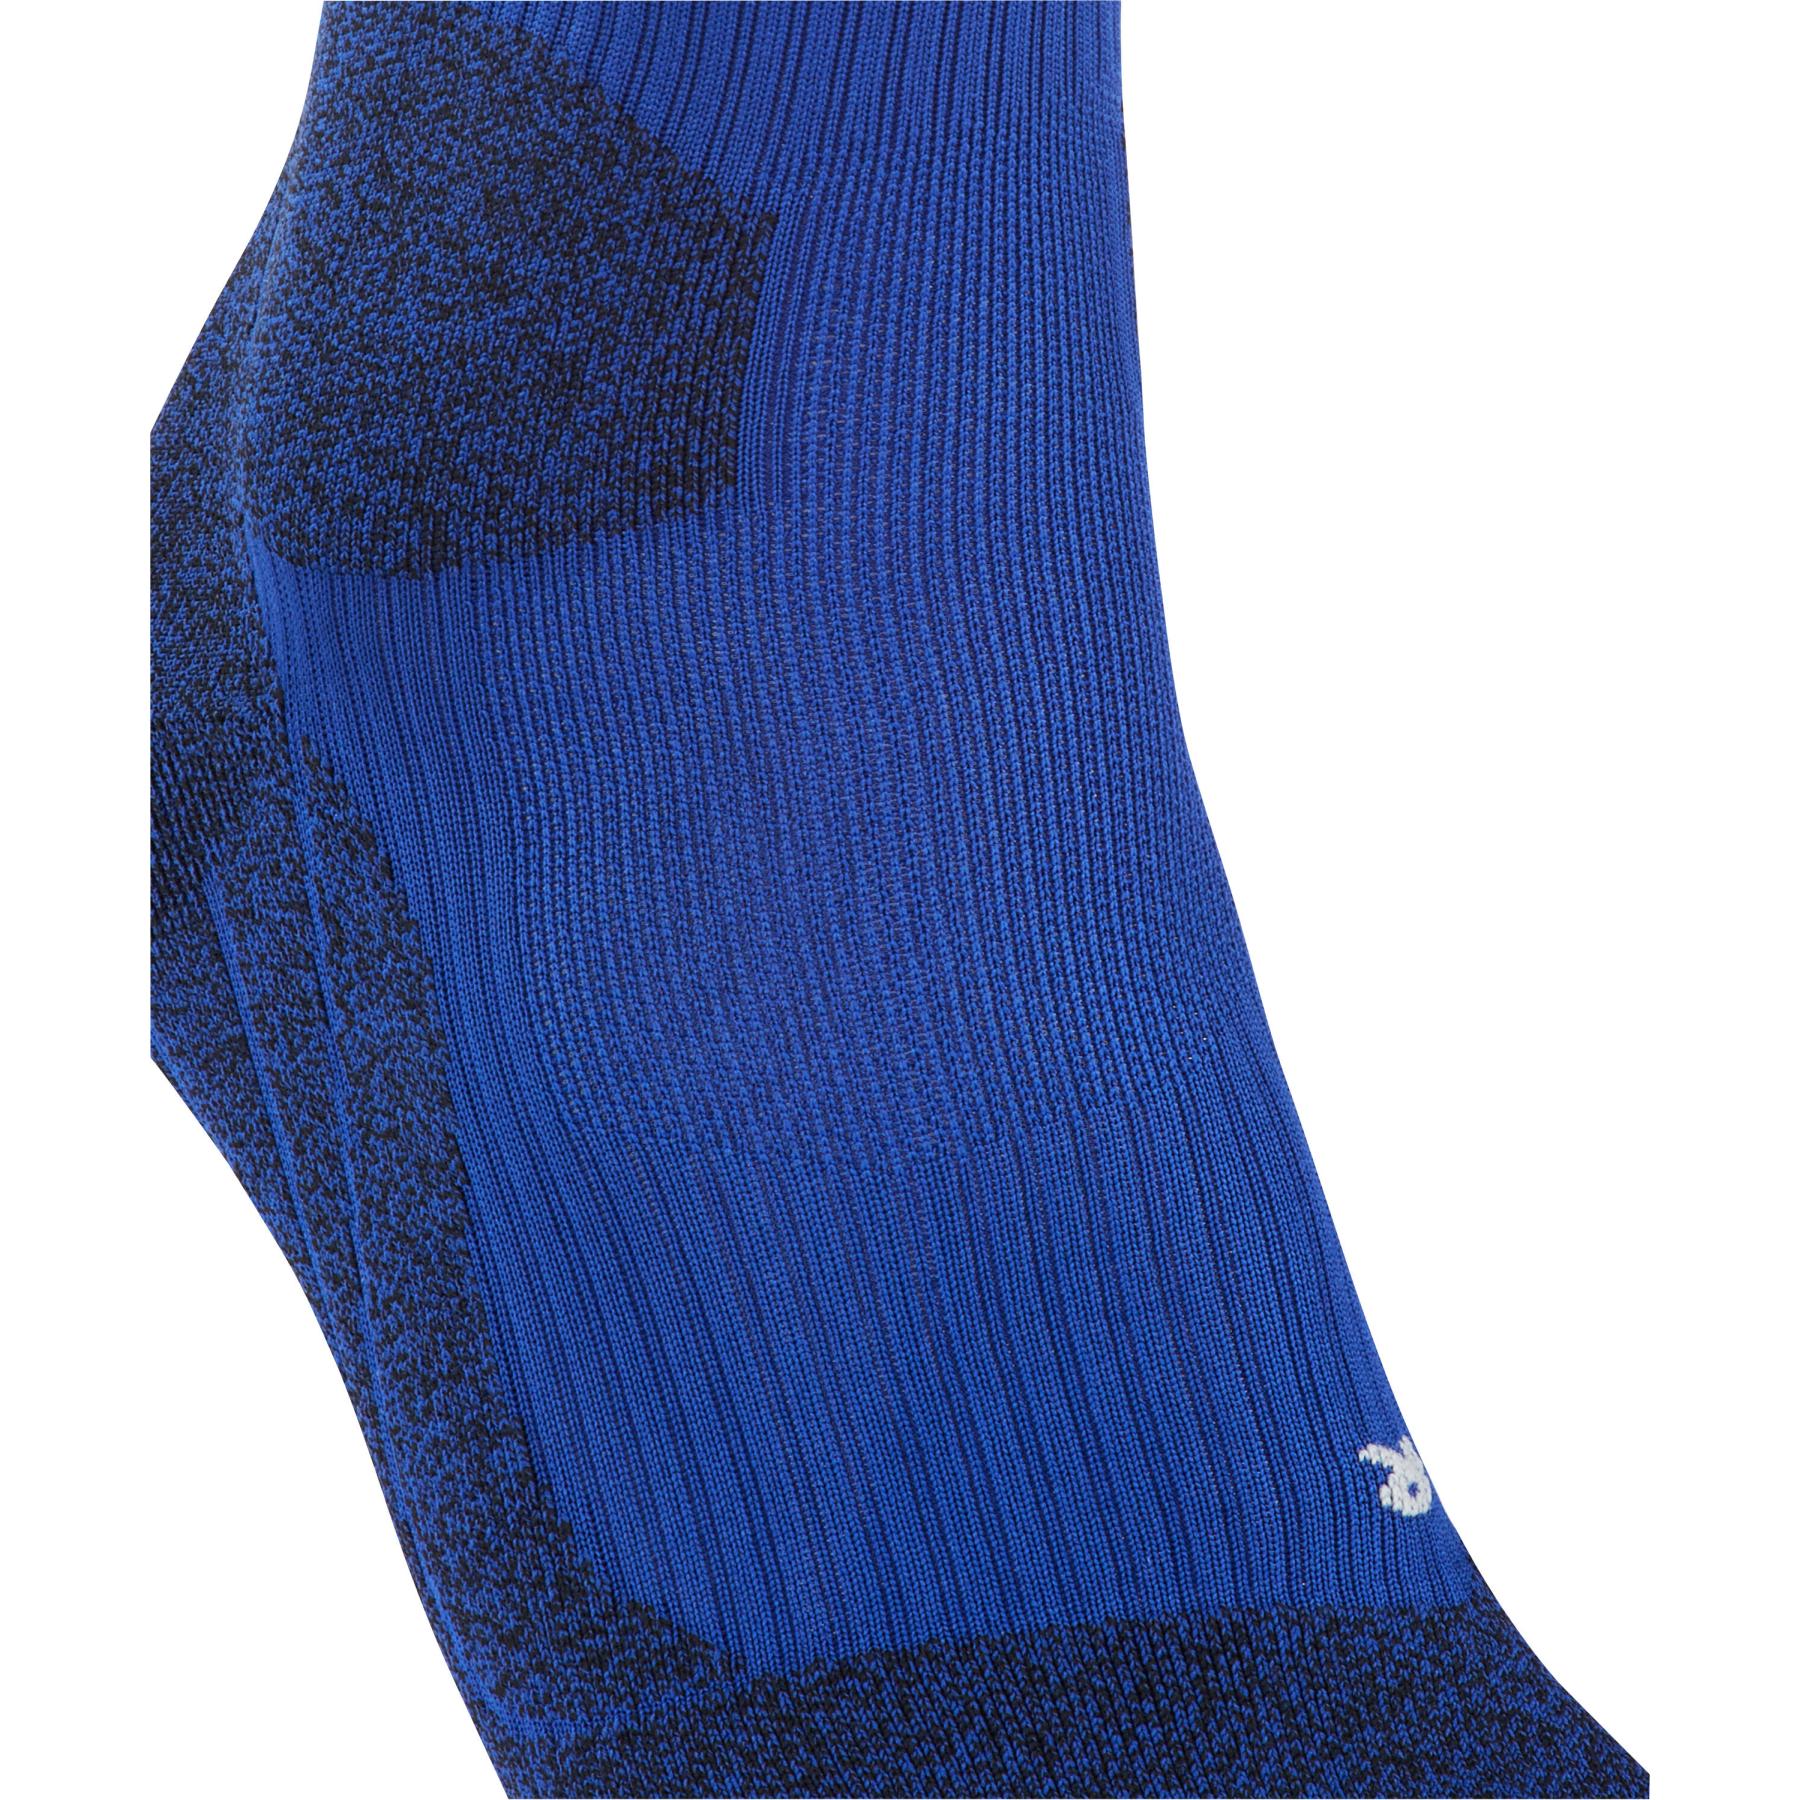 FALKE RU Trail Grip Socks Men